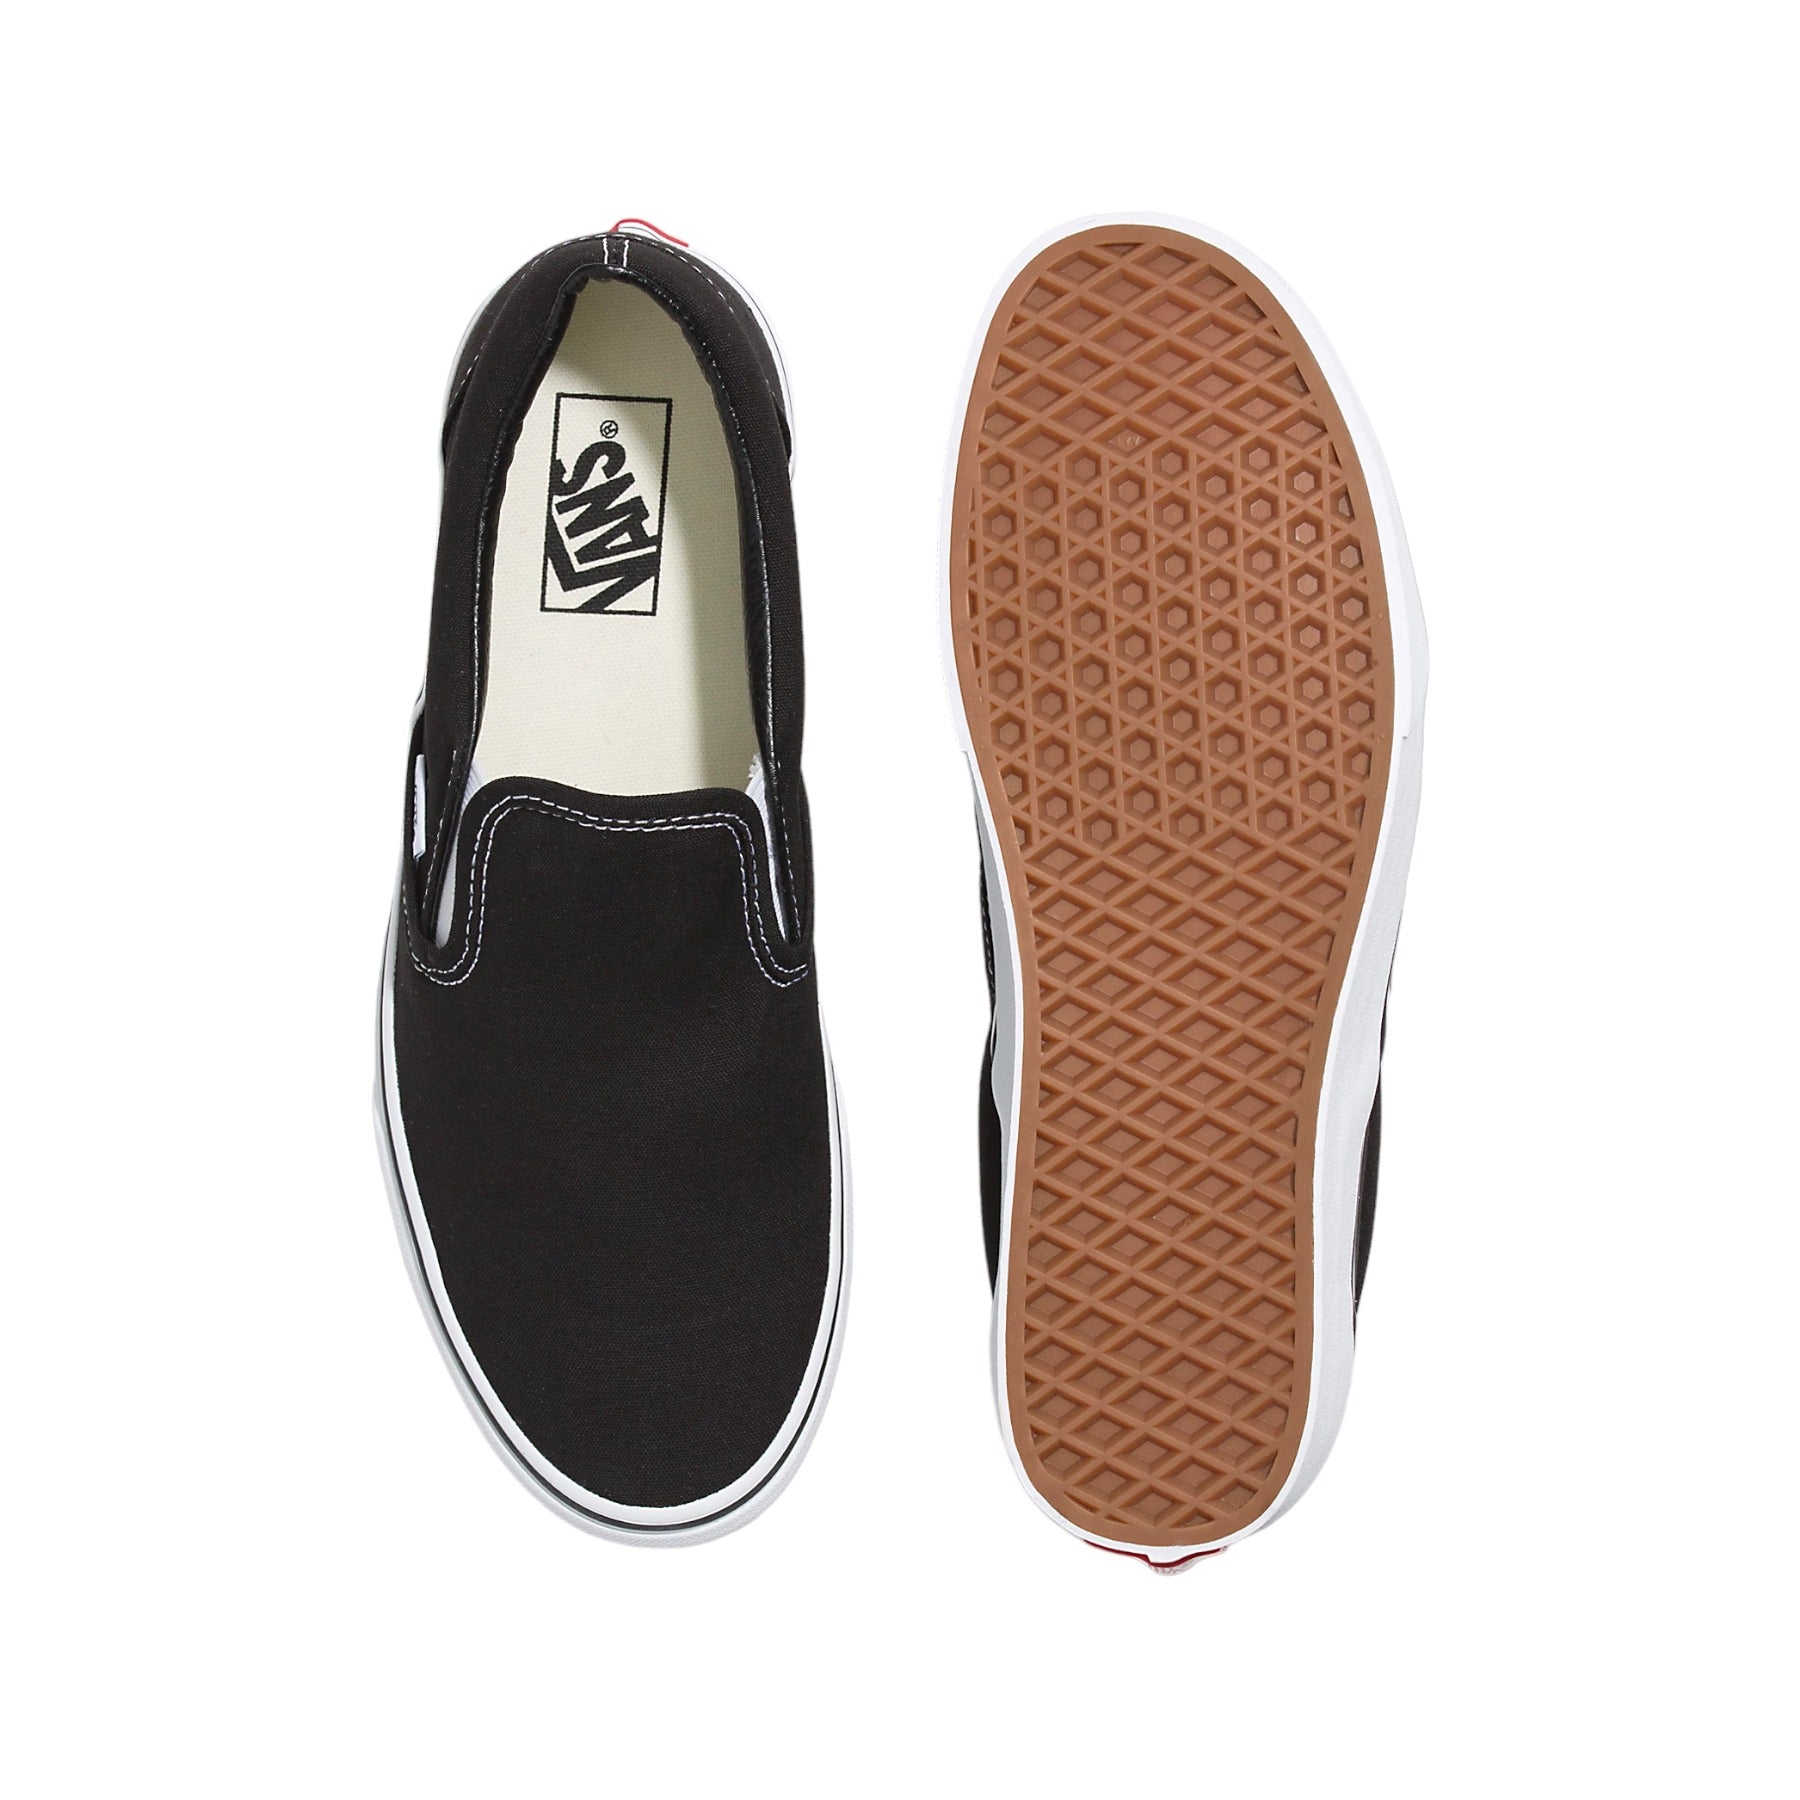 Vans Classic Slip On Shoes - Black/White